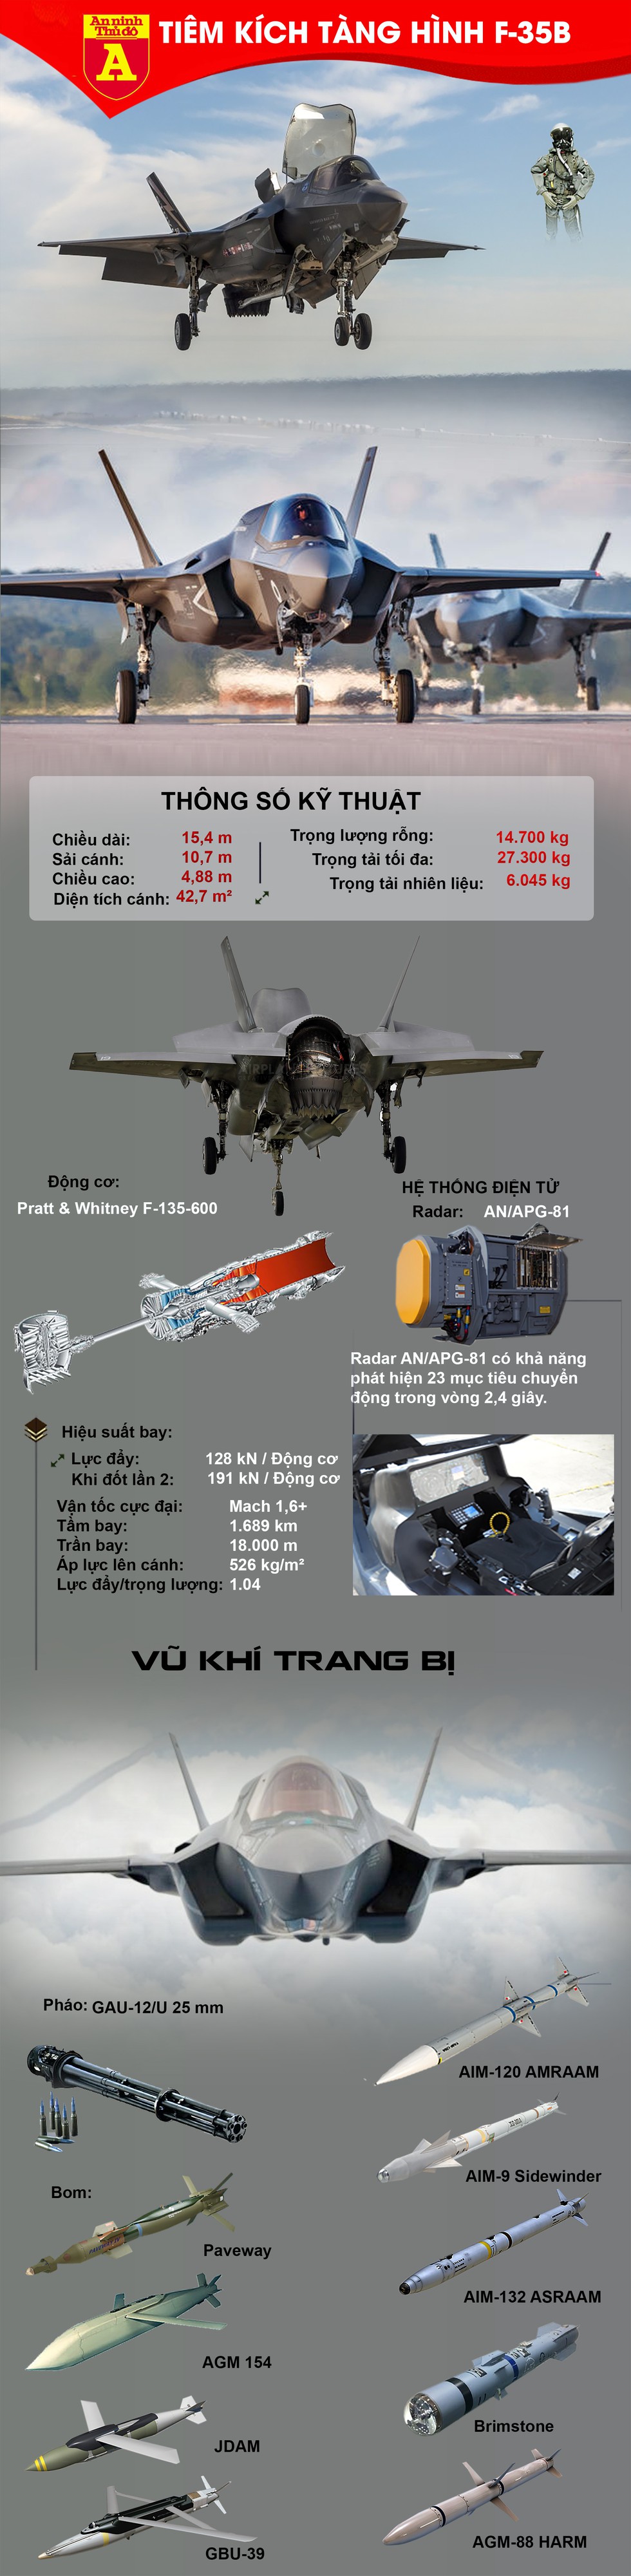 [Infographic] Tại sao Singapore lại quyết định mua "quái điểu" F-35B của Mỹ? - Ảnh 1